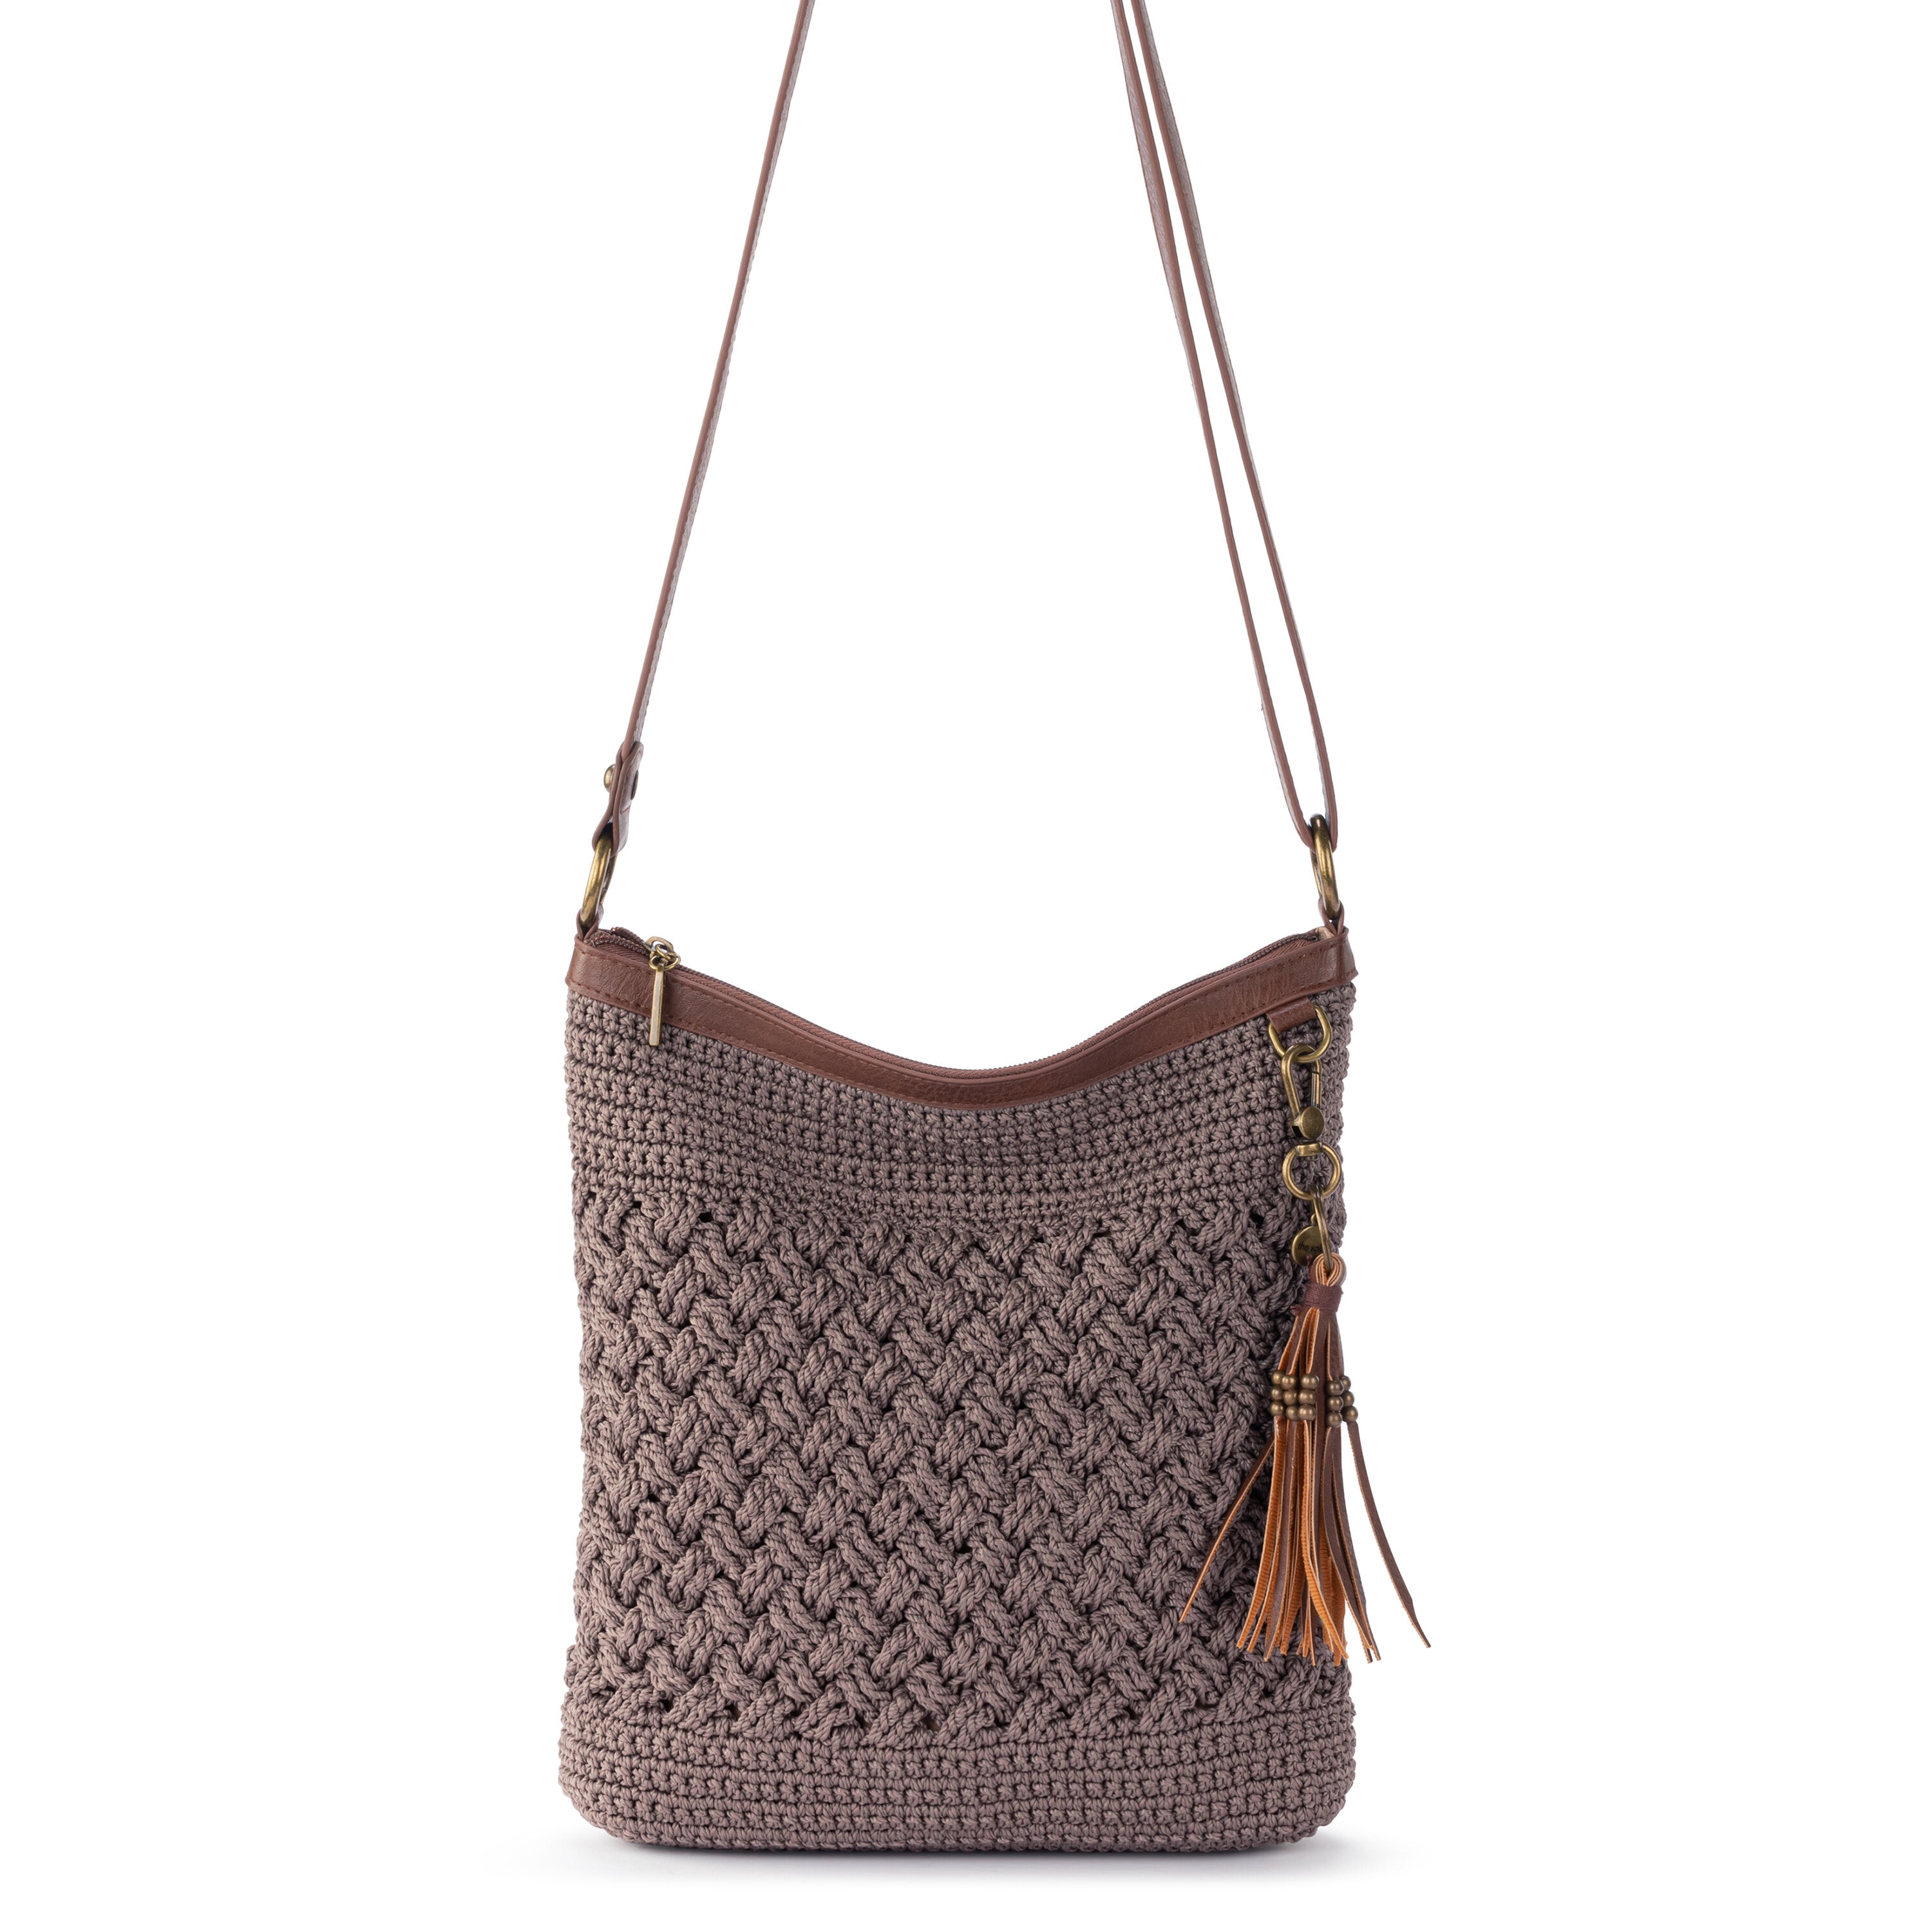 the SAK double handle zip top brown leather satchel hand bag purse